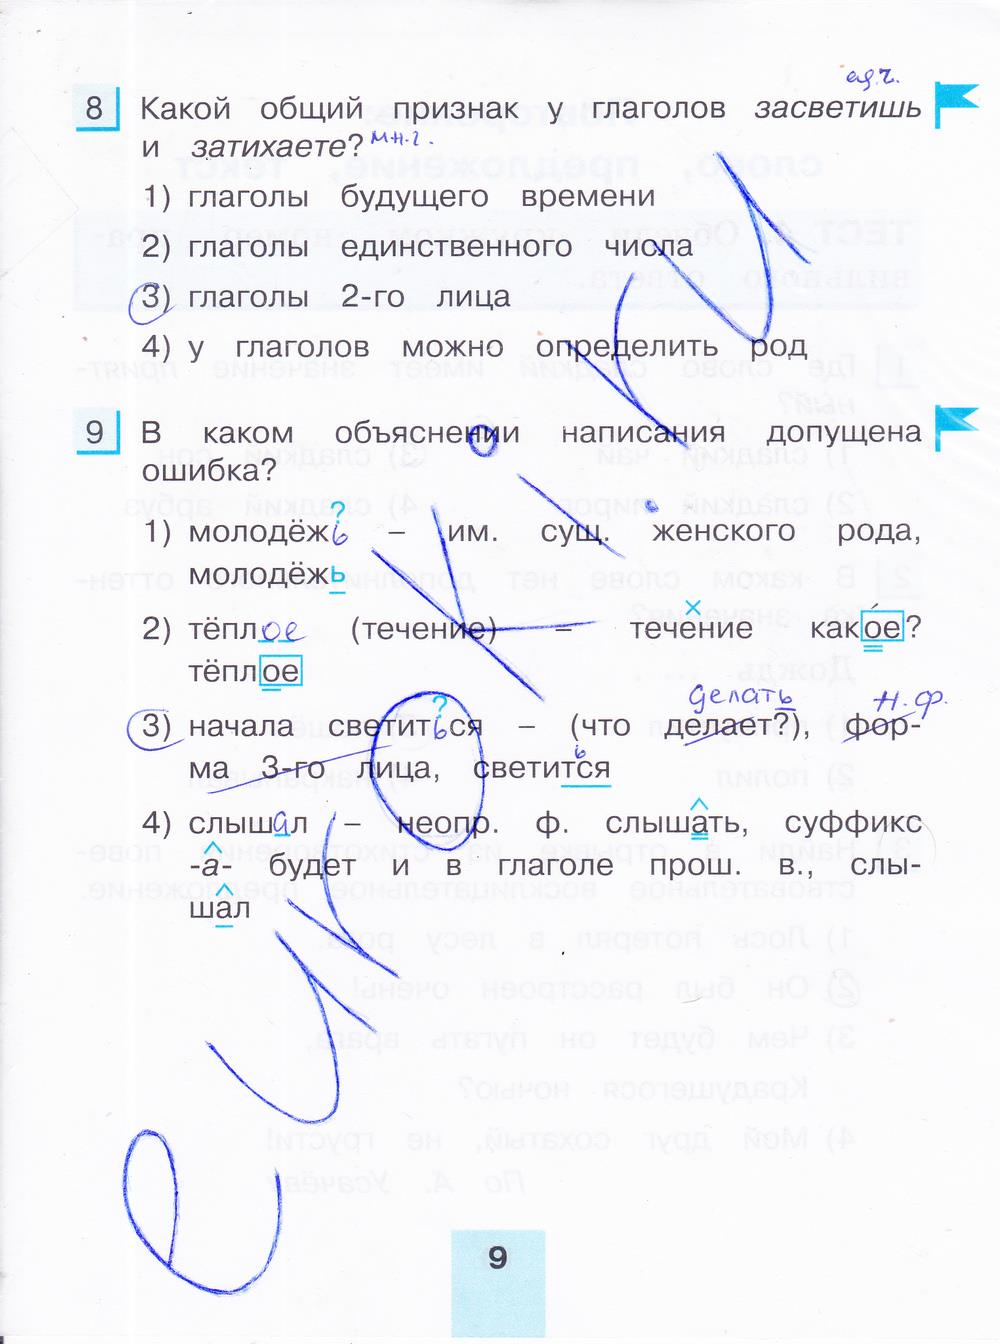 гдз 4 класс тестовые задания часть 2 страница 9 русский язык Корешкова